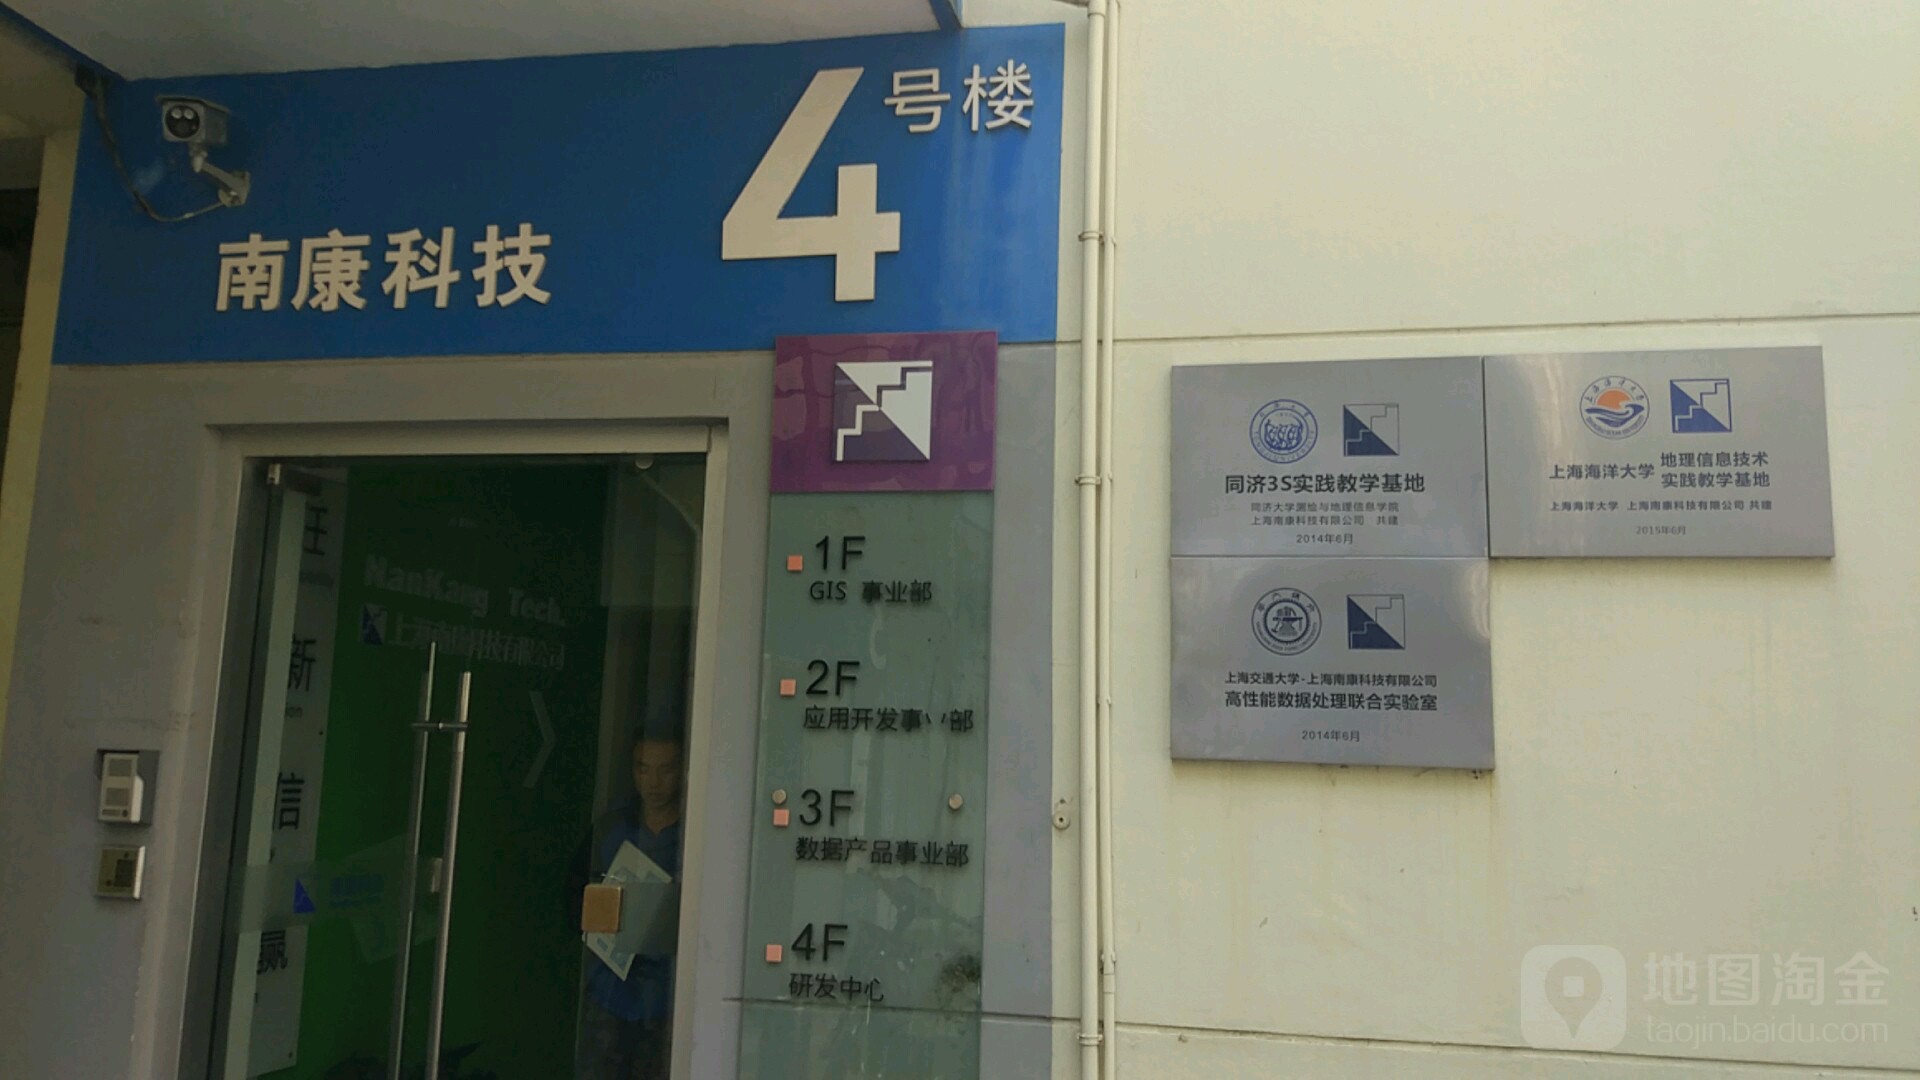 上海交通大學上海南康科技有限公司高性能數據處理聯合實驗室